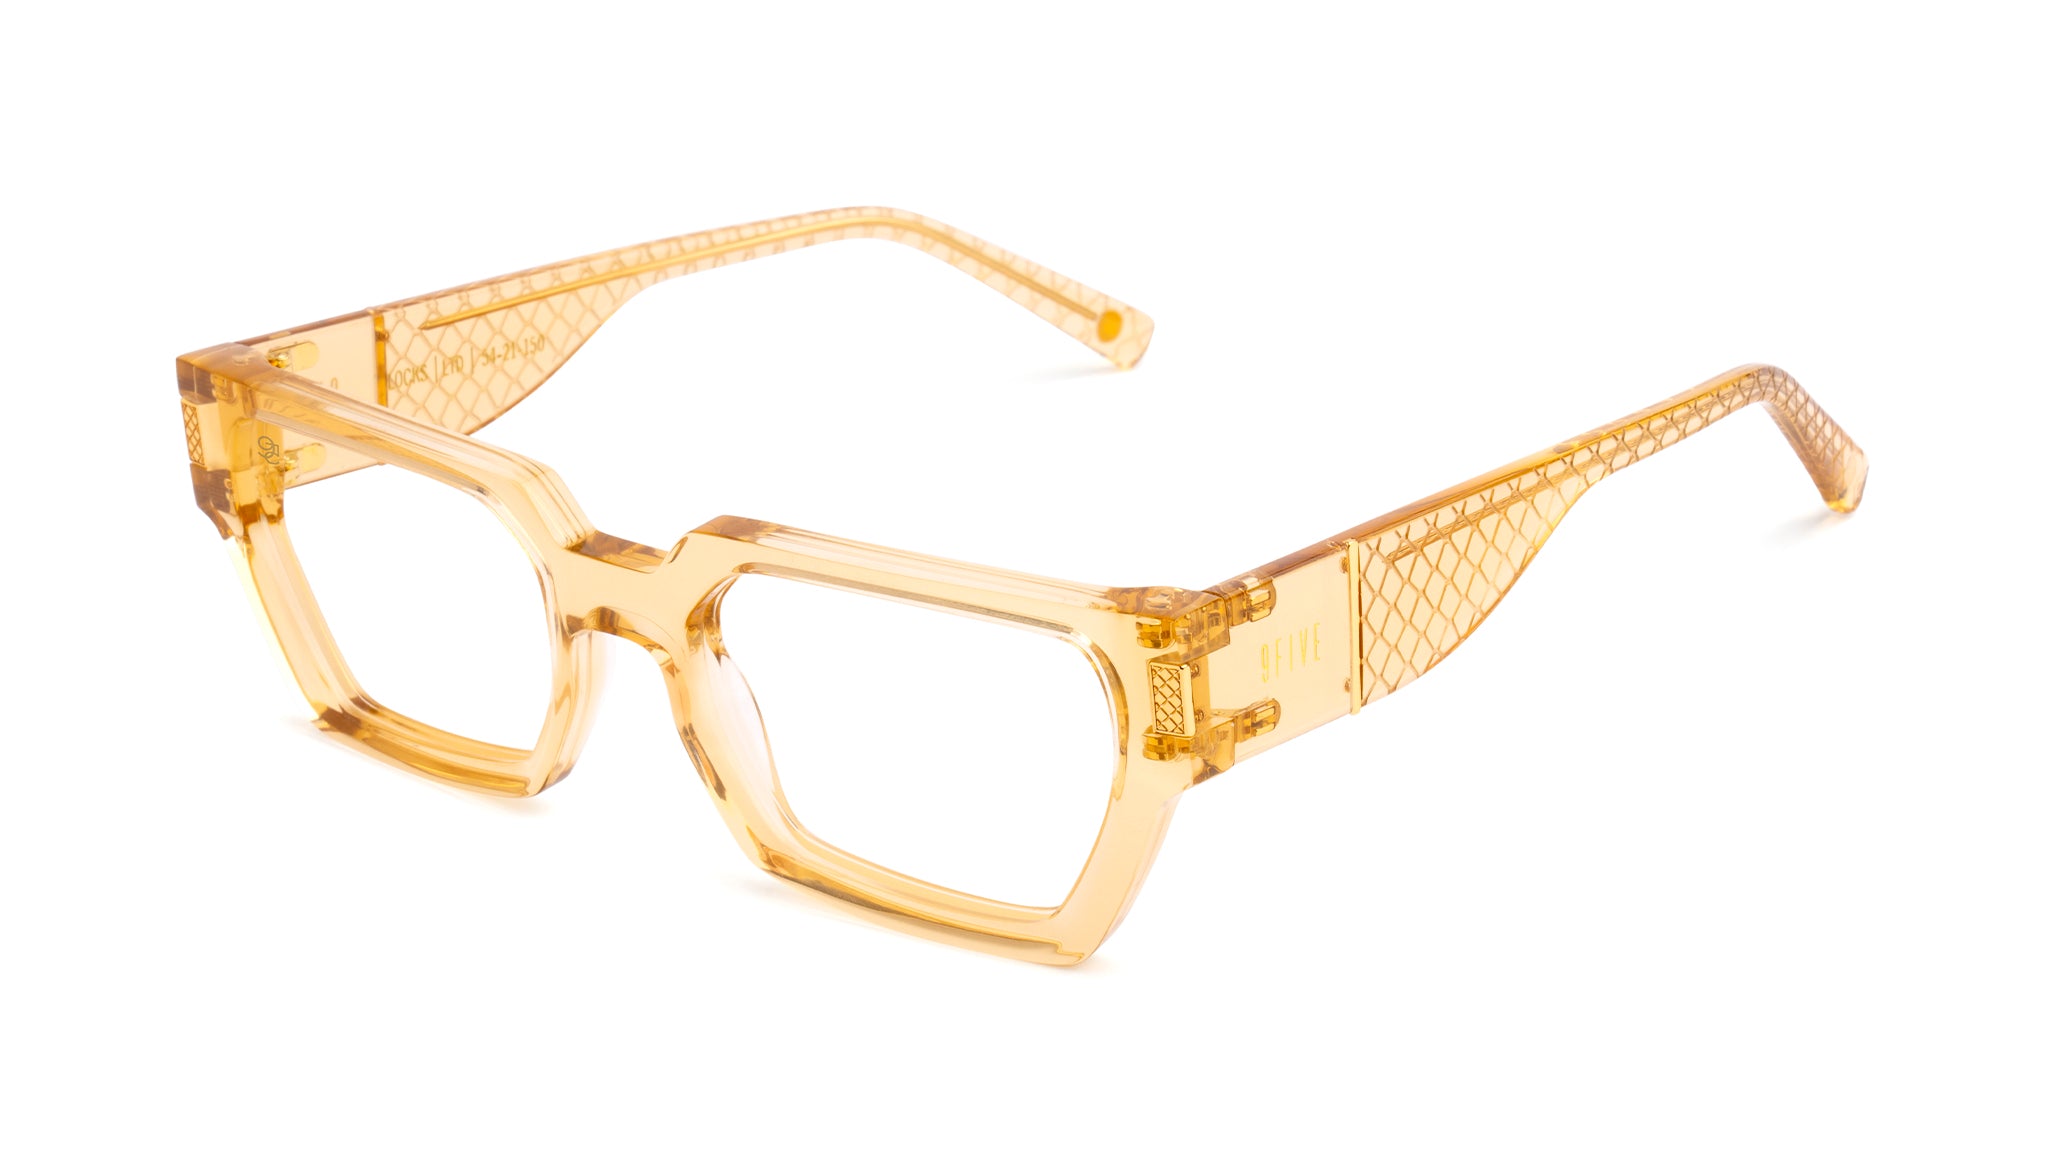 Louis Vuitton 1.1 Millionaires Sunglasses Green Acetate & Metal. Size W